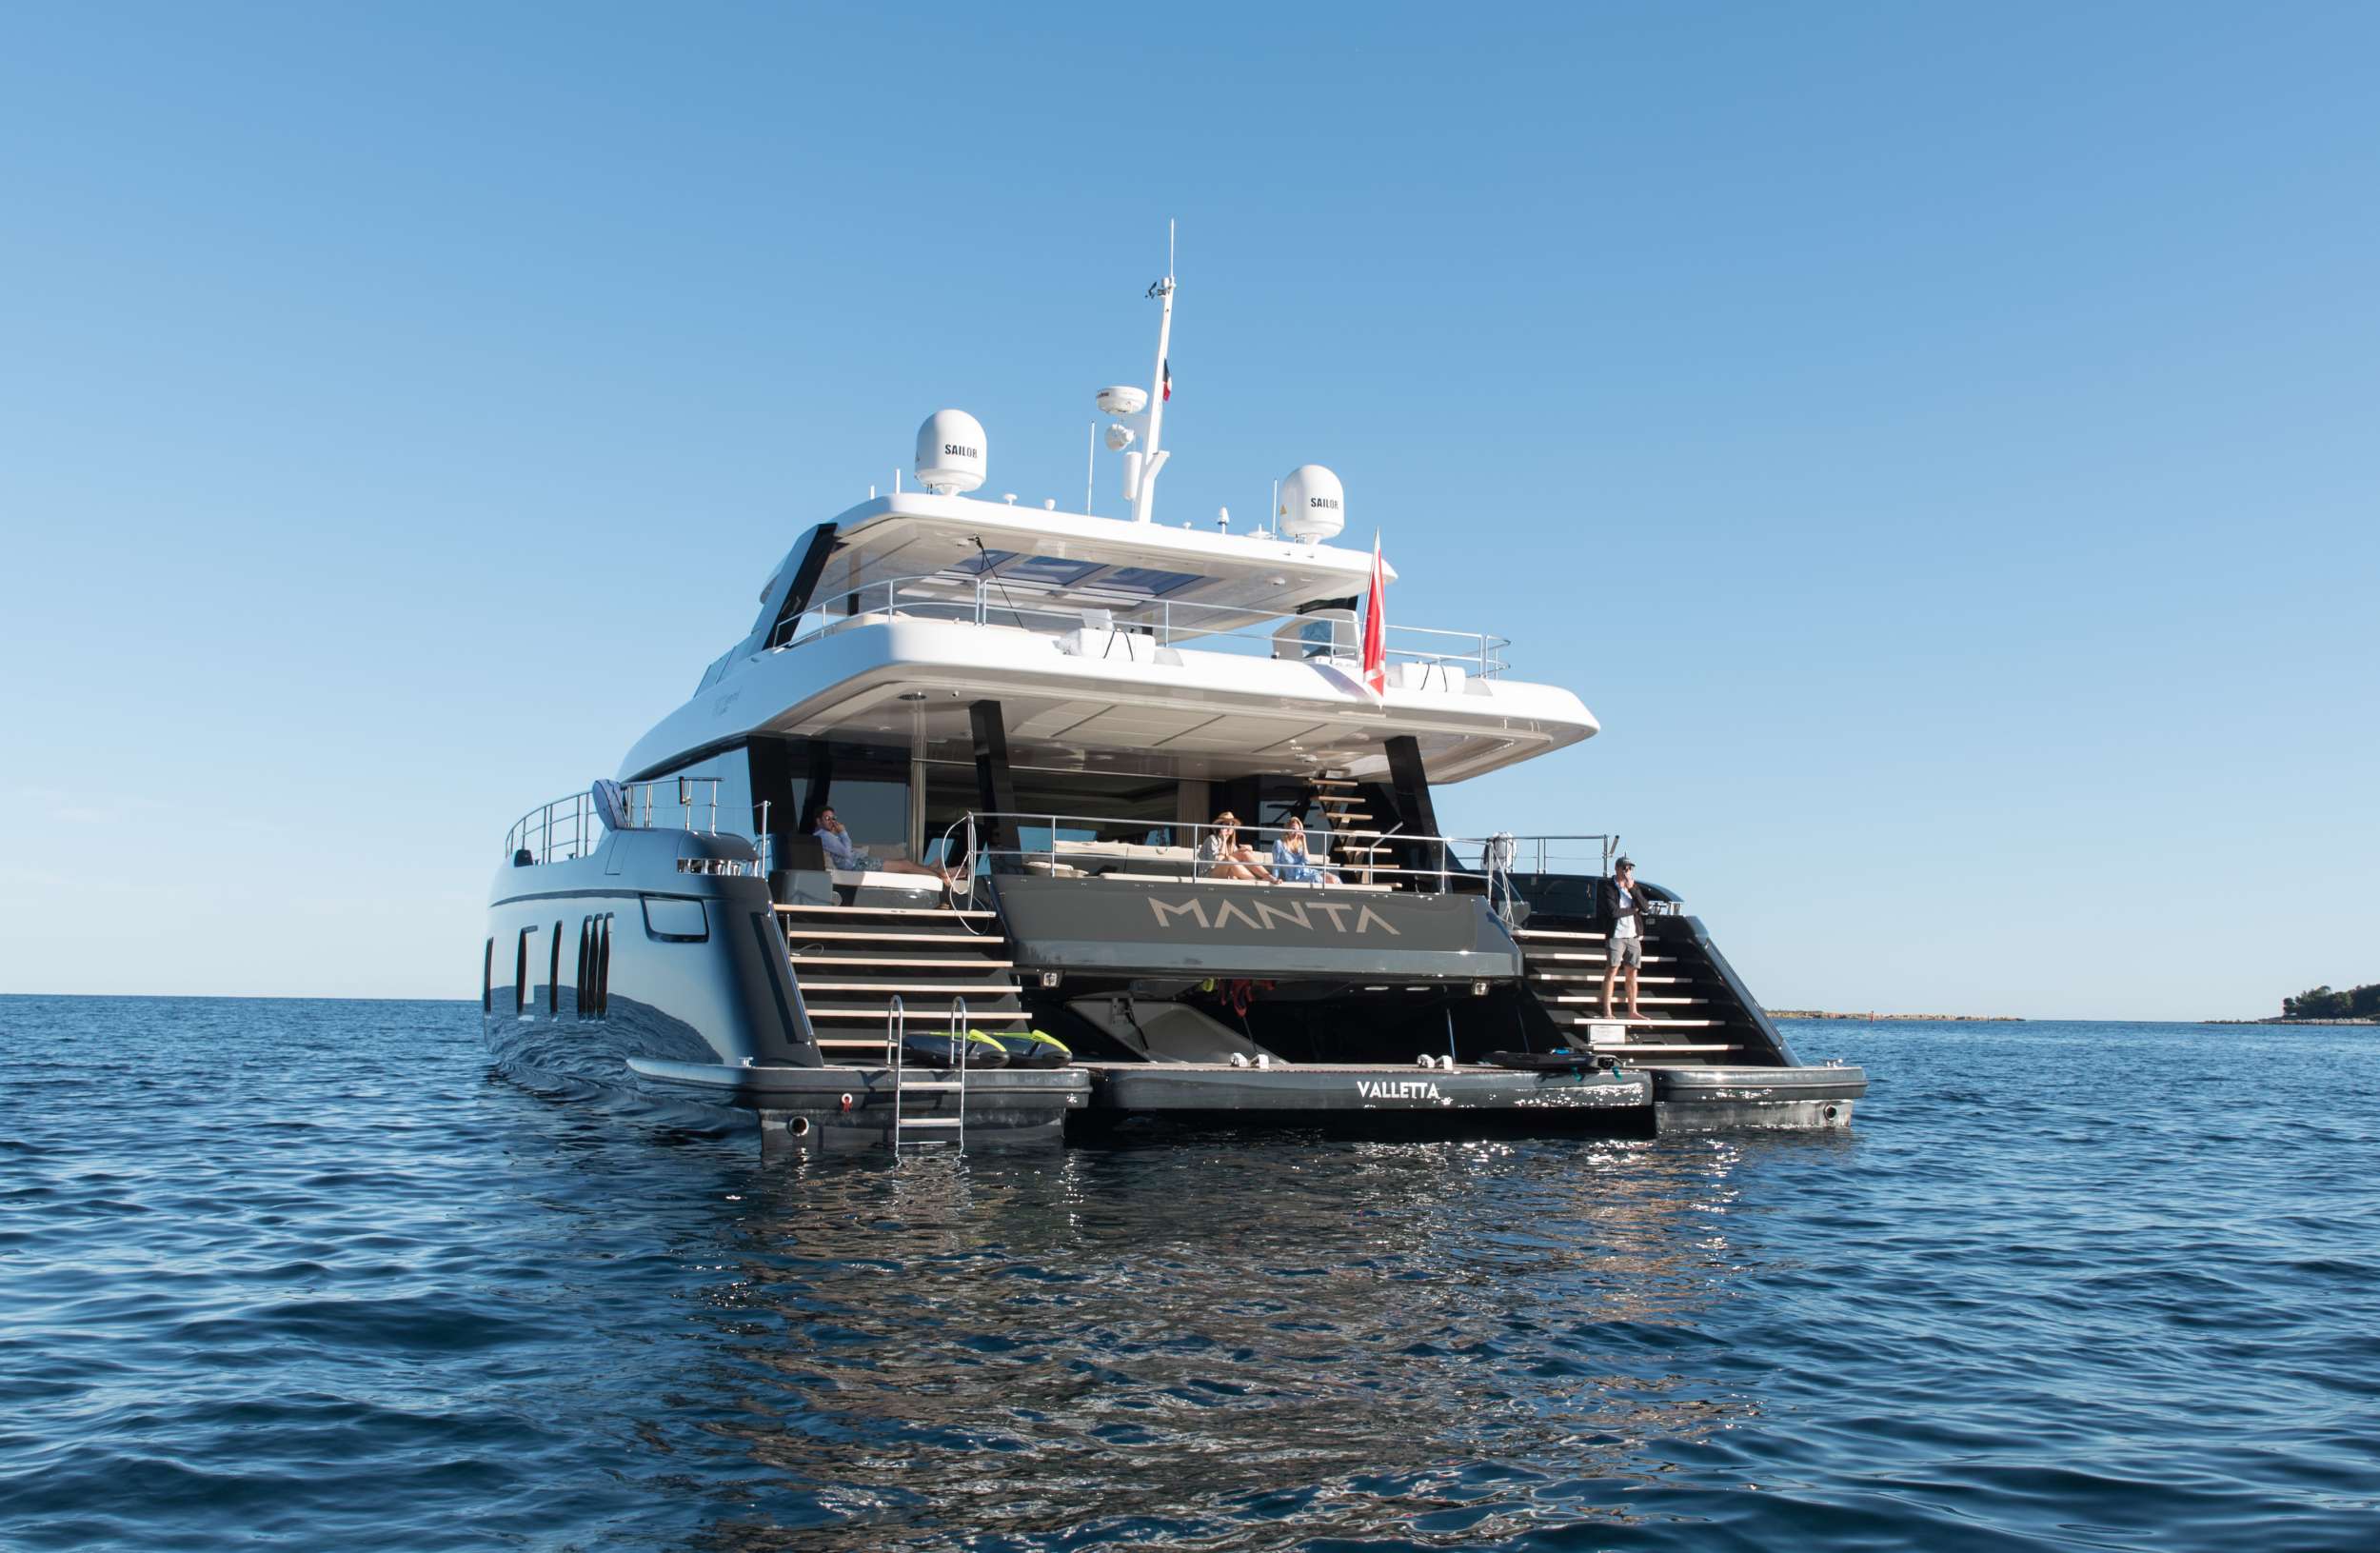 MANTA - Superyacht charter Sicily & Boat hire in Riviera, Cors, Sard, Italy, Spain, Turkey, Croatia, Greece 1